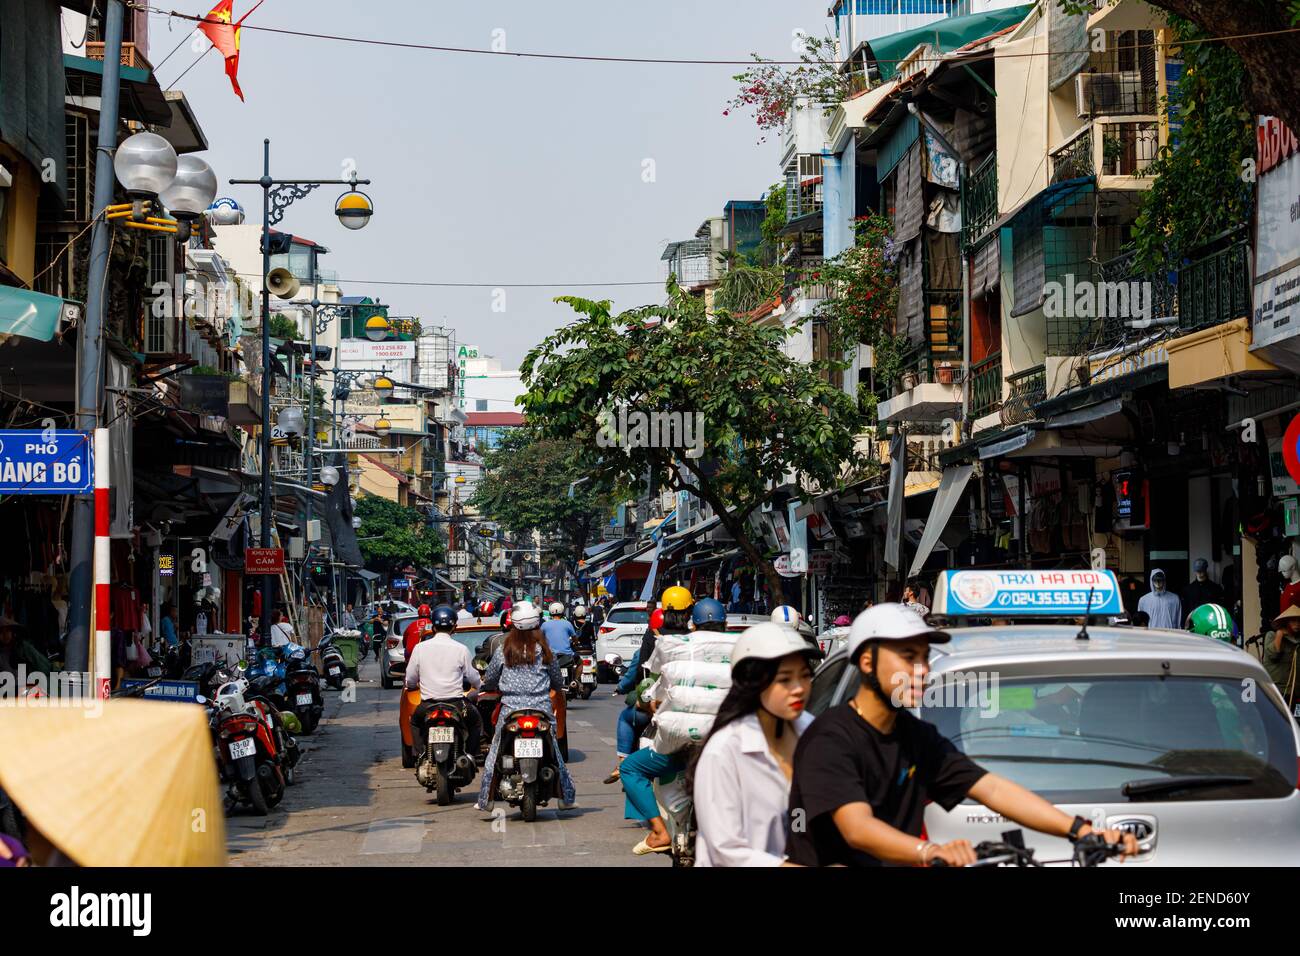 chaos traffic of Hanoi in Vietnam Stock Photo